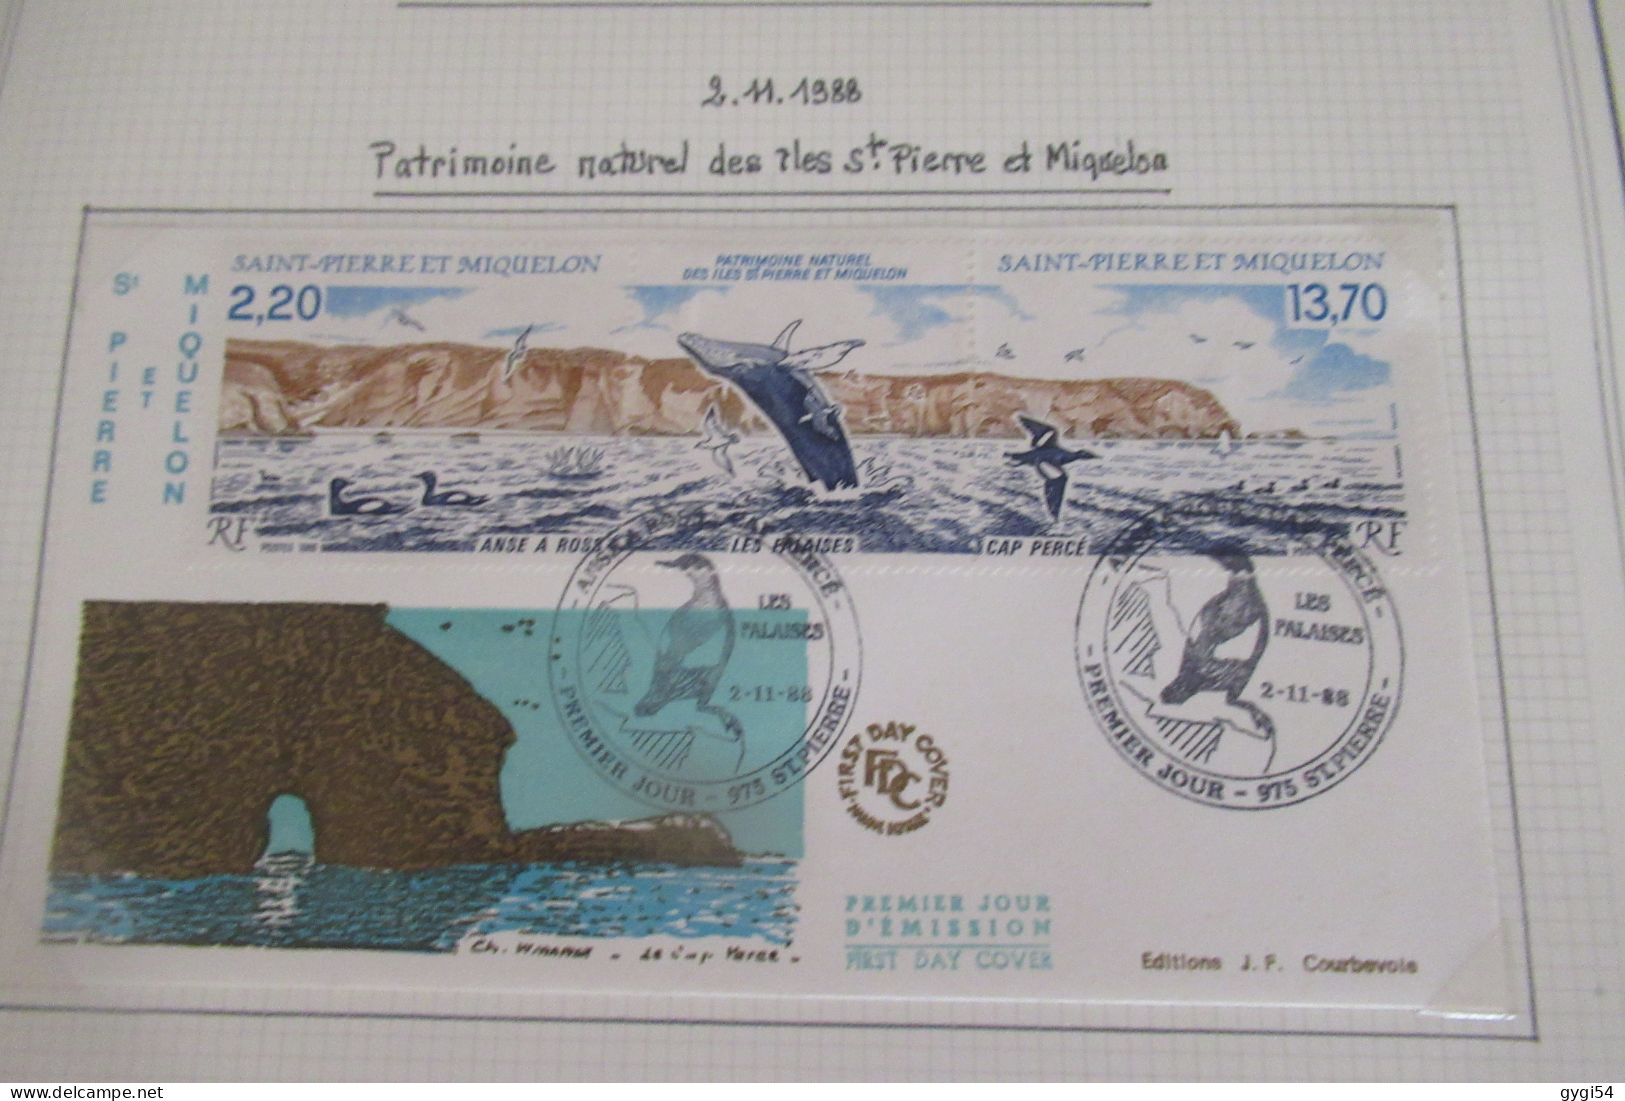 Saint-Pierre et Miquelon FDC   1988